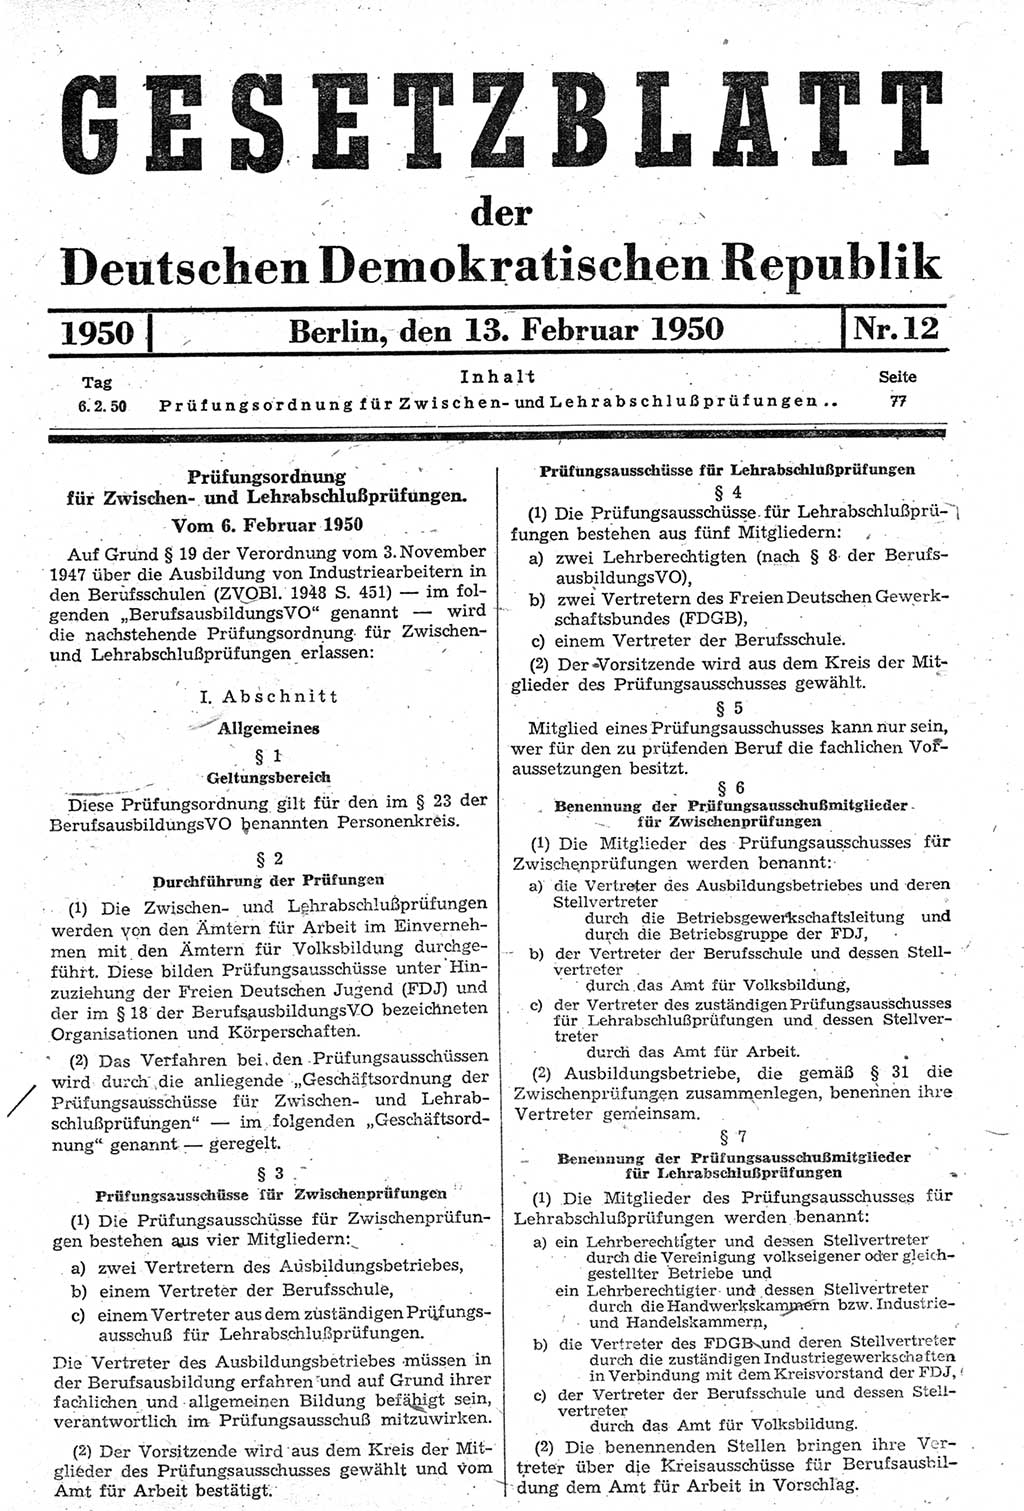 Gesetzblatt (GBl.) der Deutschen Demokratischen Republik (DDR) 1950, Seite 77 (GBl. DDR 1950, S. 77)